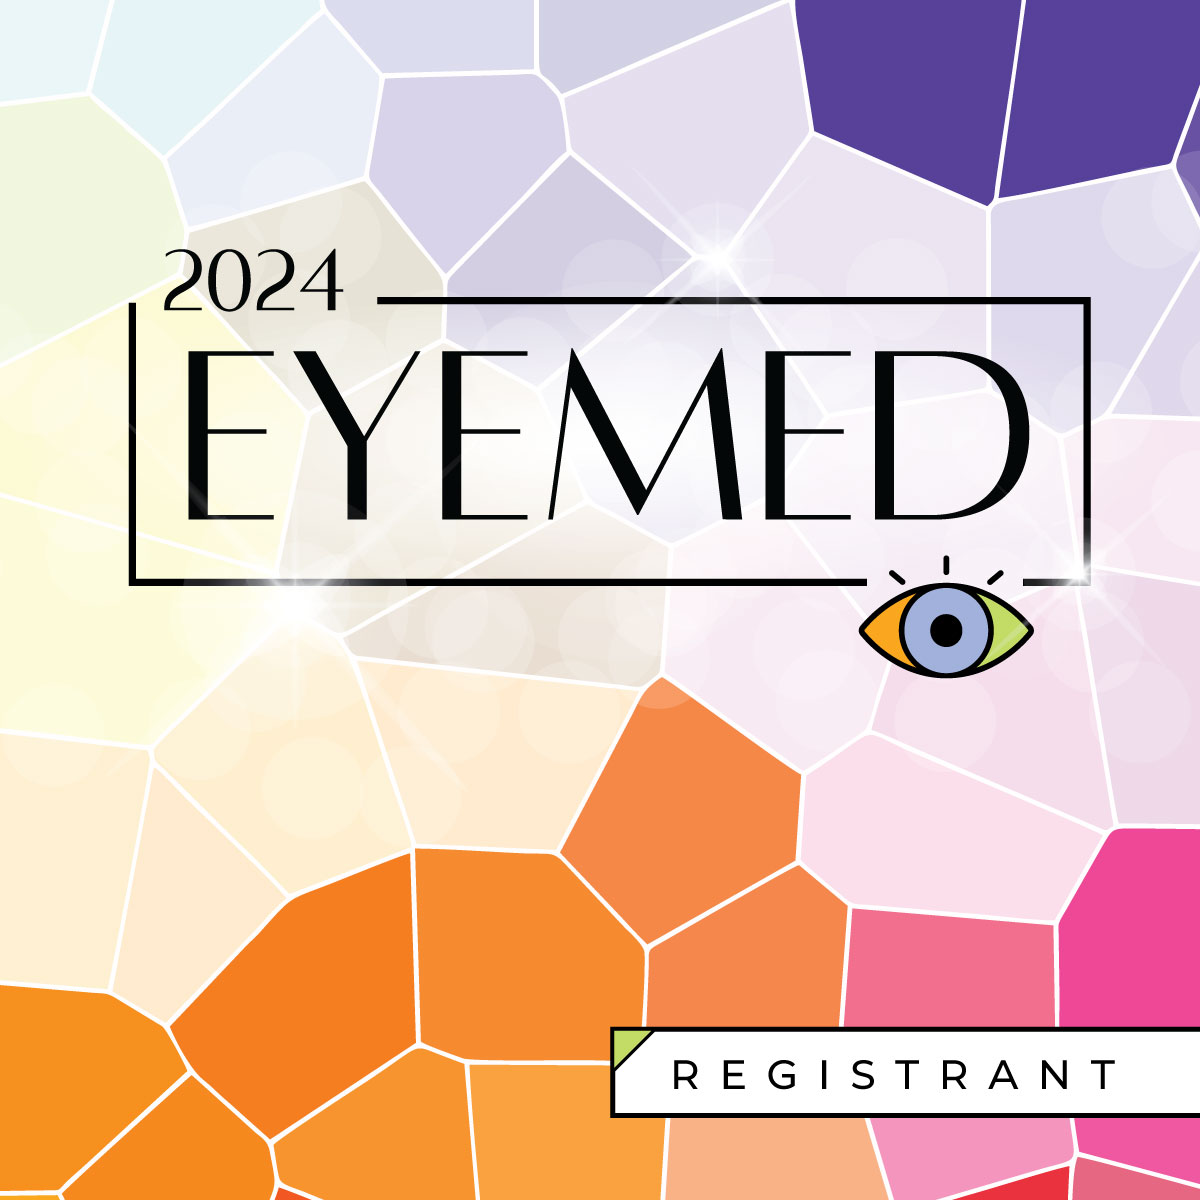 eyemed logo